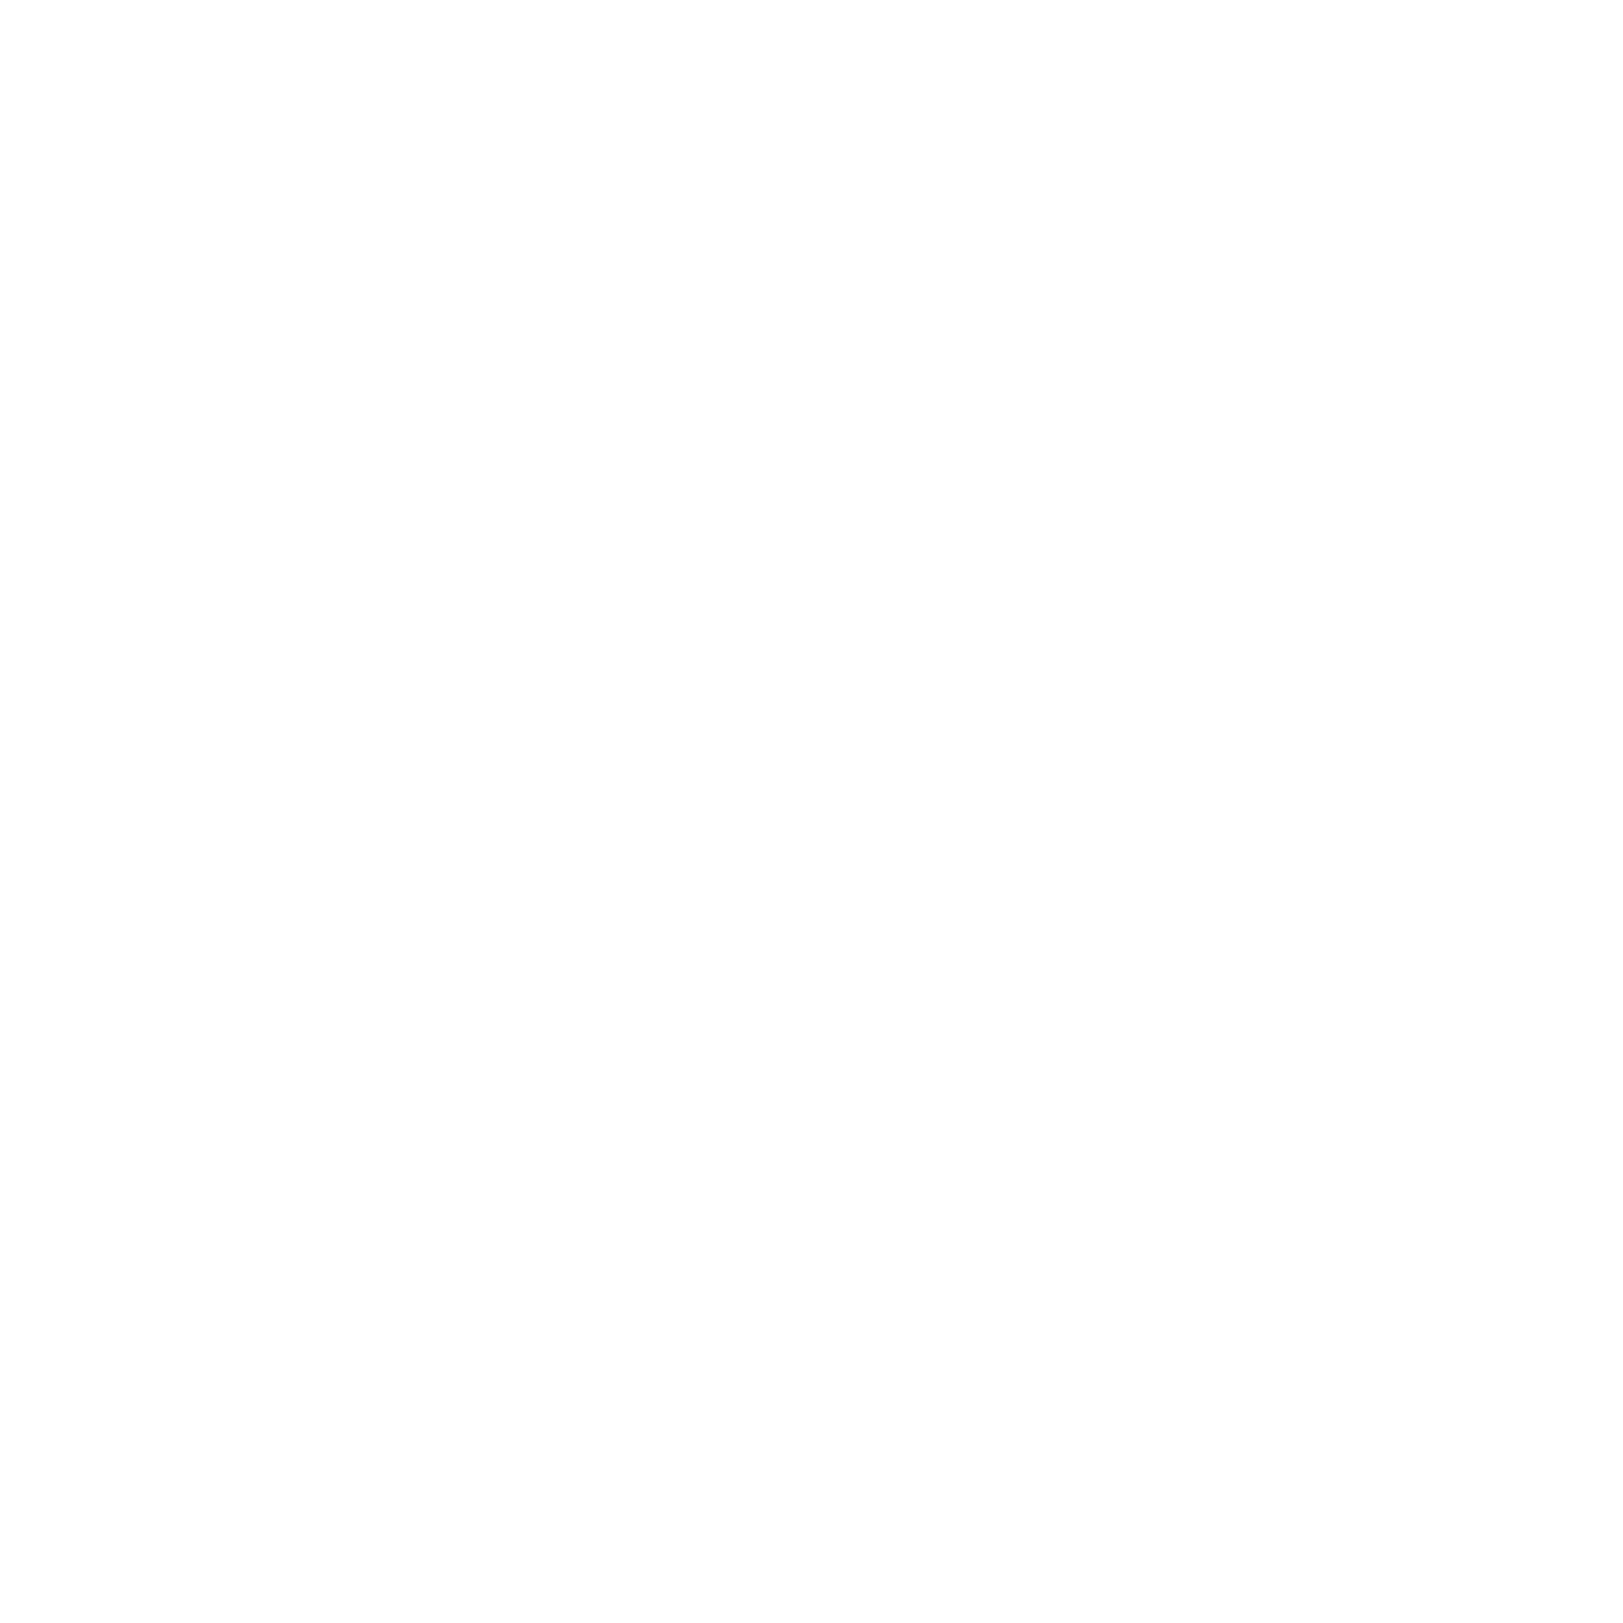 General Motors logo for dark backgrounds (transparent PNG)